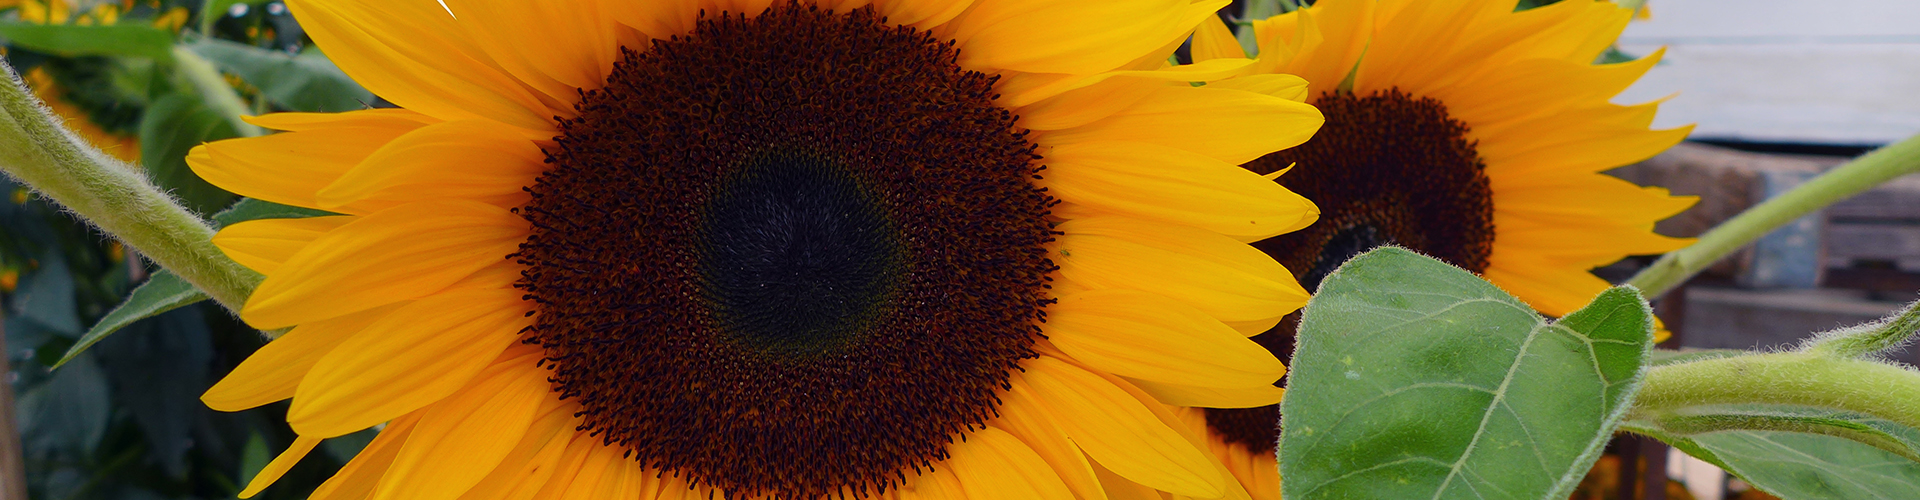 Sommer, Sonnenblume © Heike Arnold